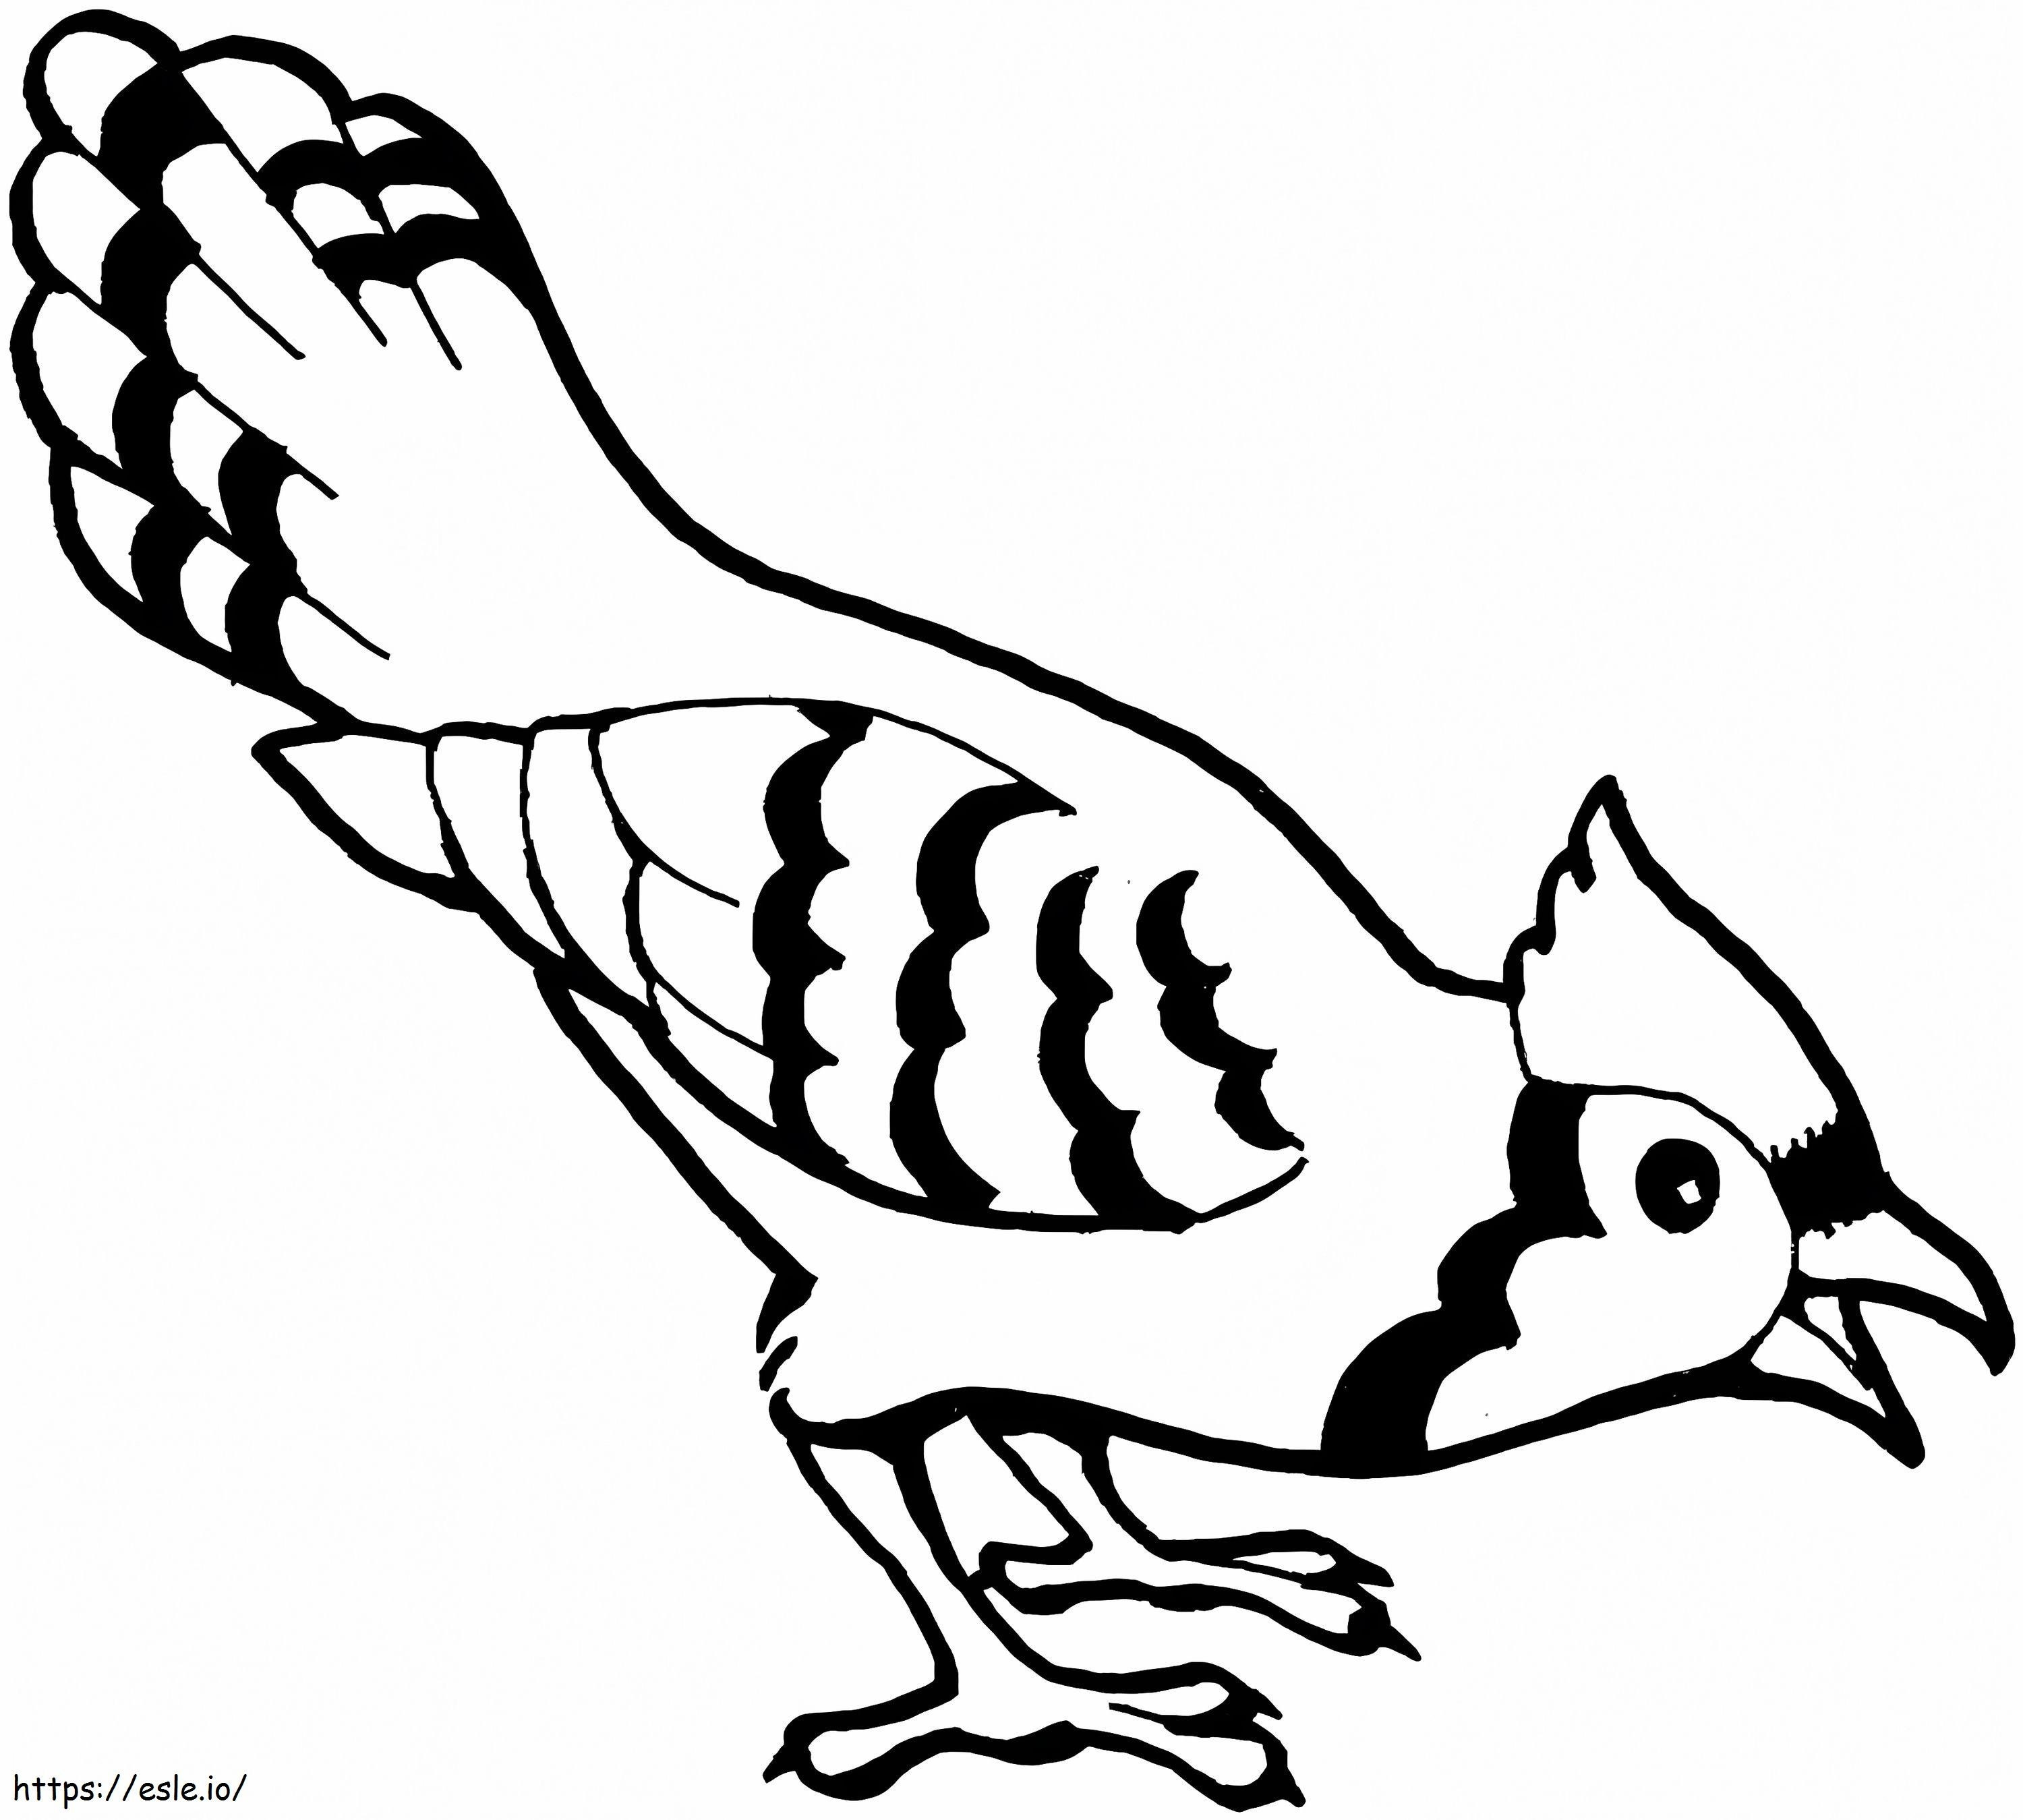 Coloriage Oiseau Geai bleu à imprimer dessin